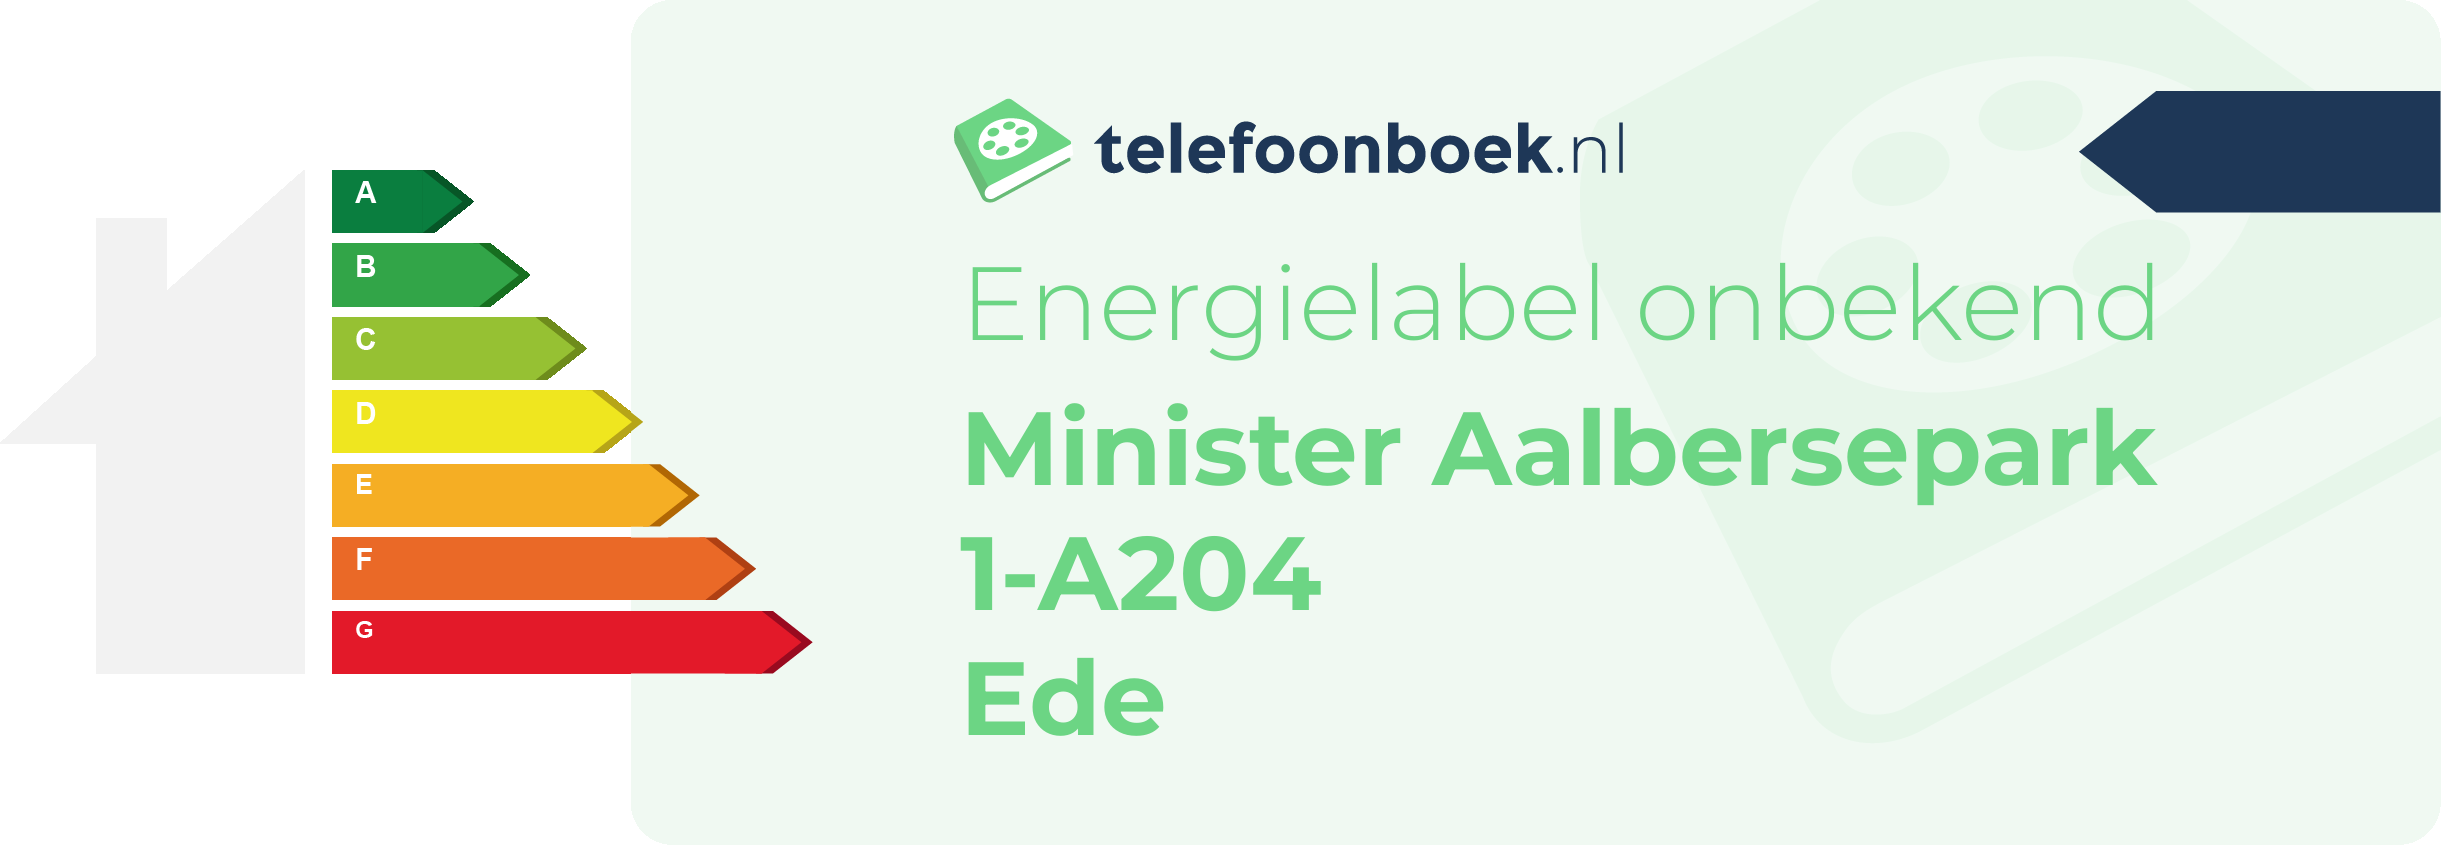 Energielabel Minister Aalbersepark 1-A204 Ede